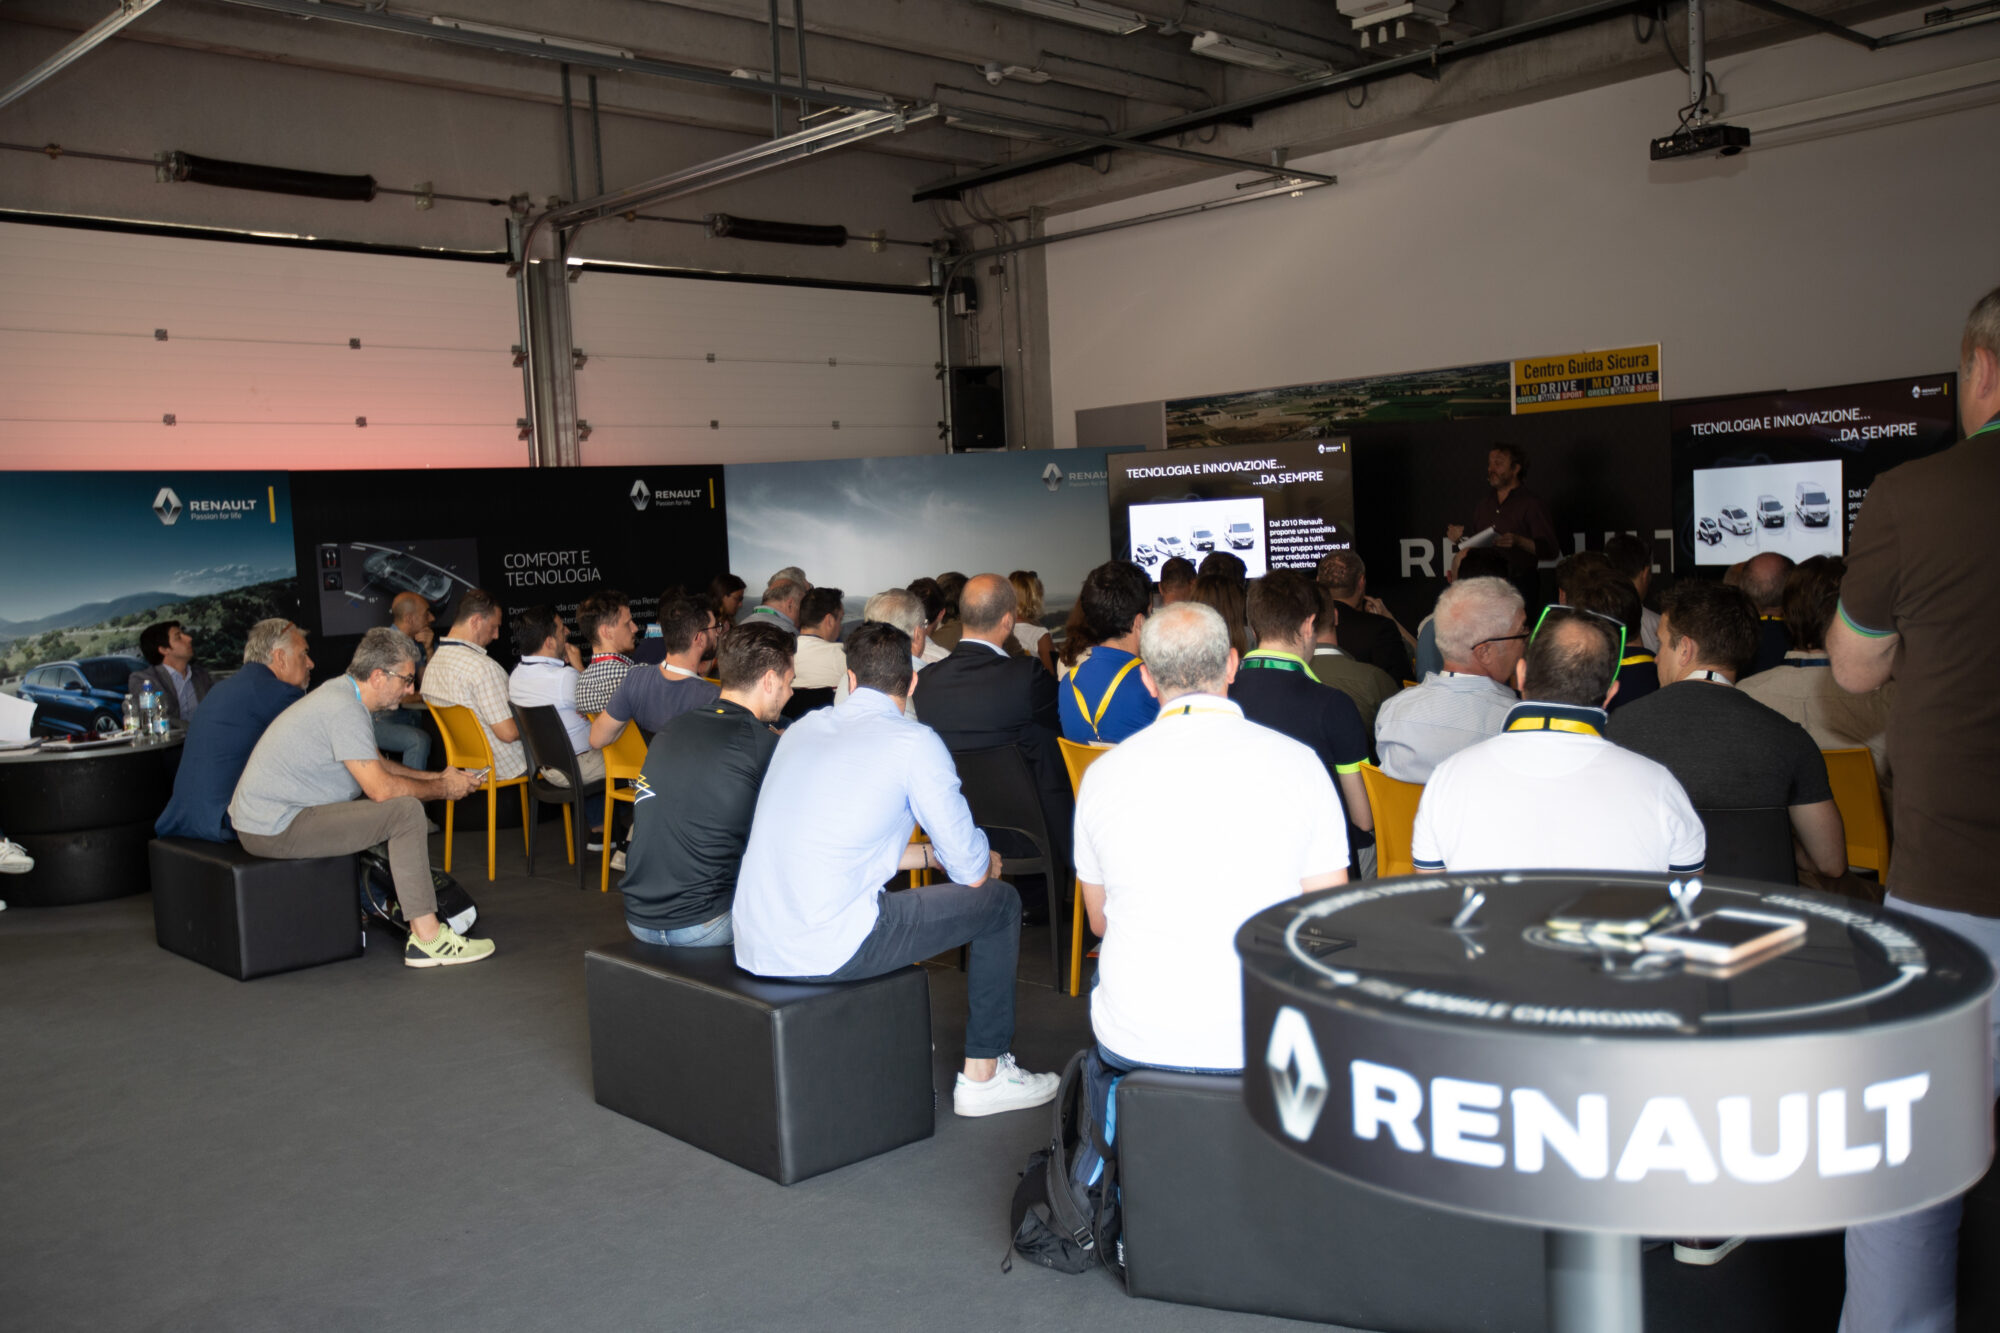 CS- Renault, da sempre innovazione tecnologica per tutti